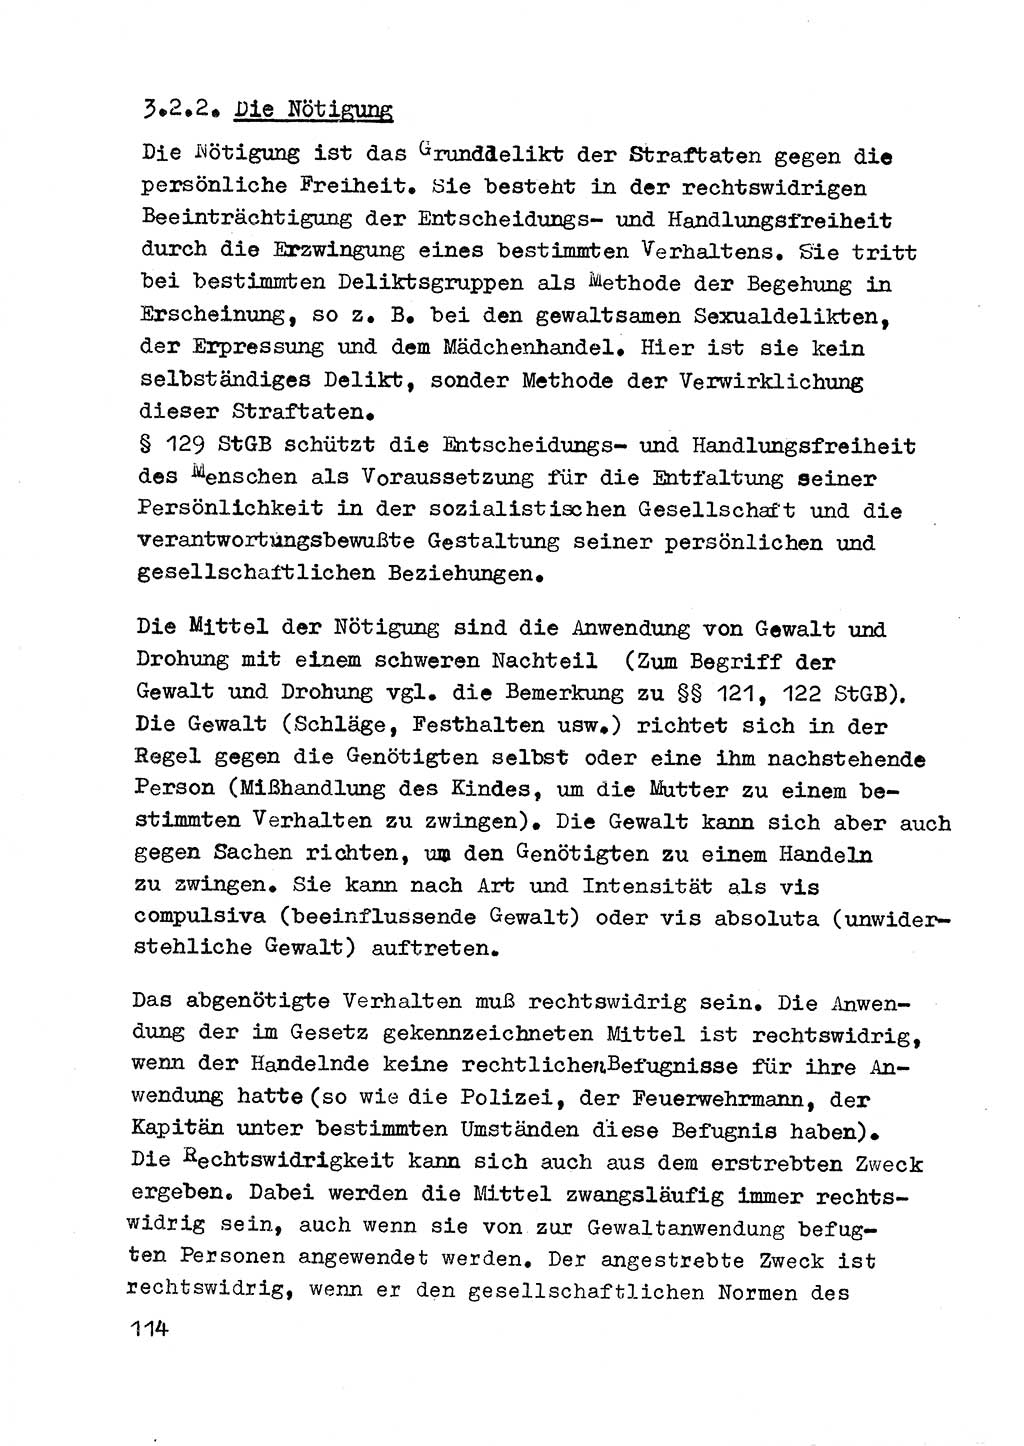 Strafrecht der DDR (Deutsche Demokratische Republik), Besonderer Teil, Lehrmaterial, Heft 3 1969, Seite 114 (Strafr. DDR BT Lehrmat. H. 3 1969, S. 114)